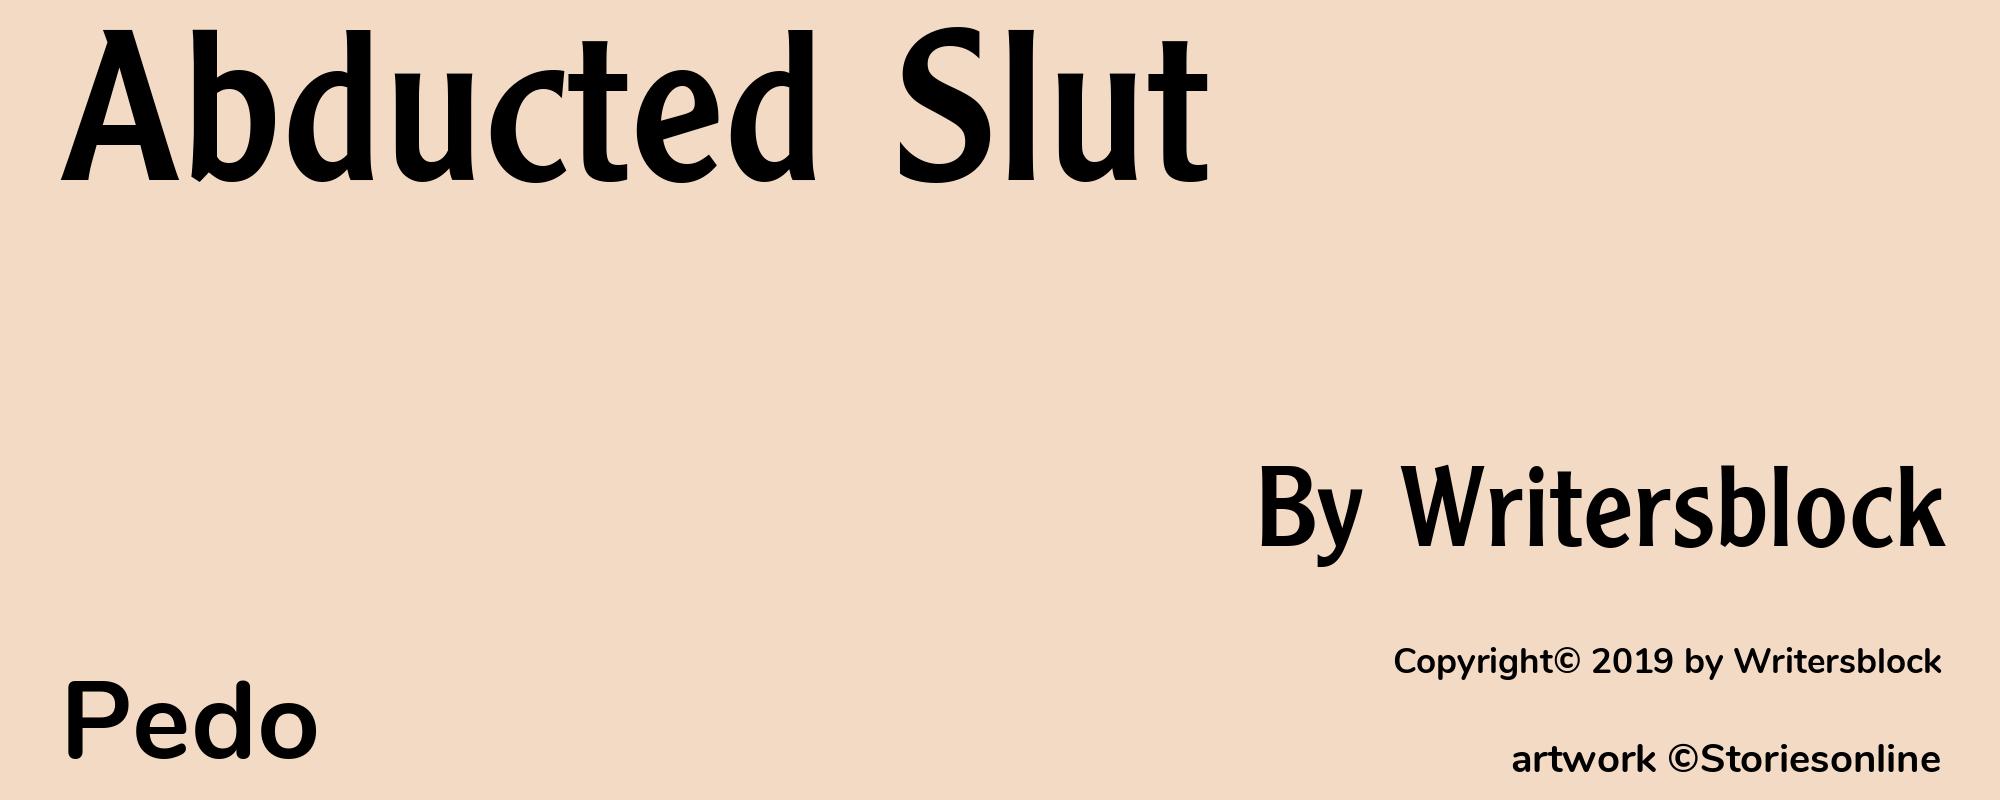 Abducted Slut - Cover